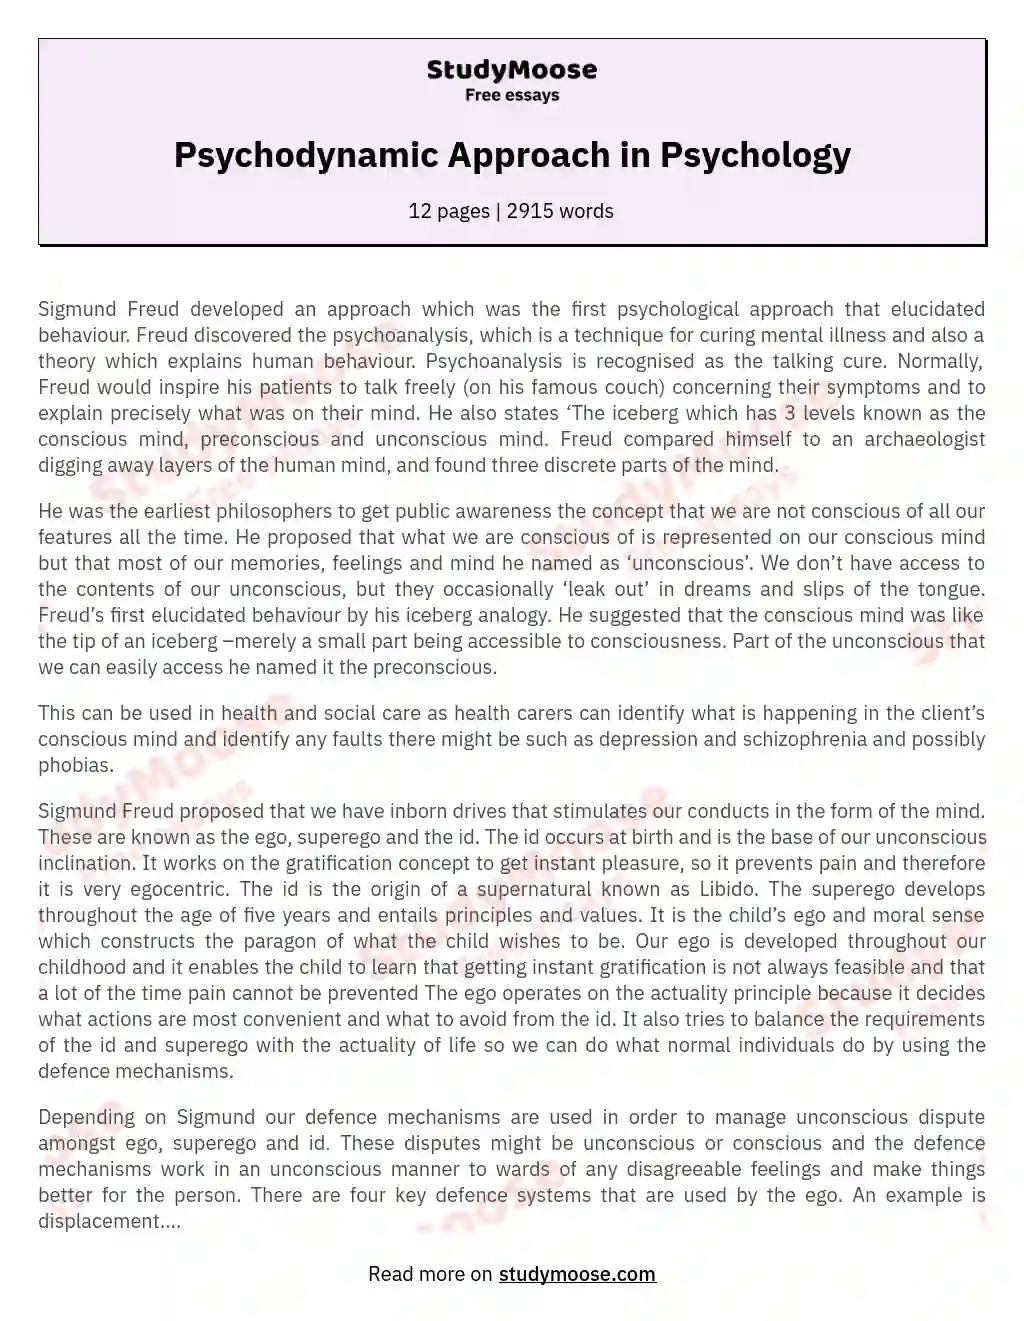 psychodynamic approach essay questions